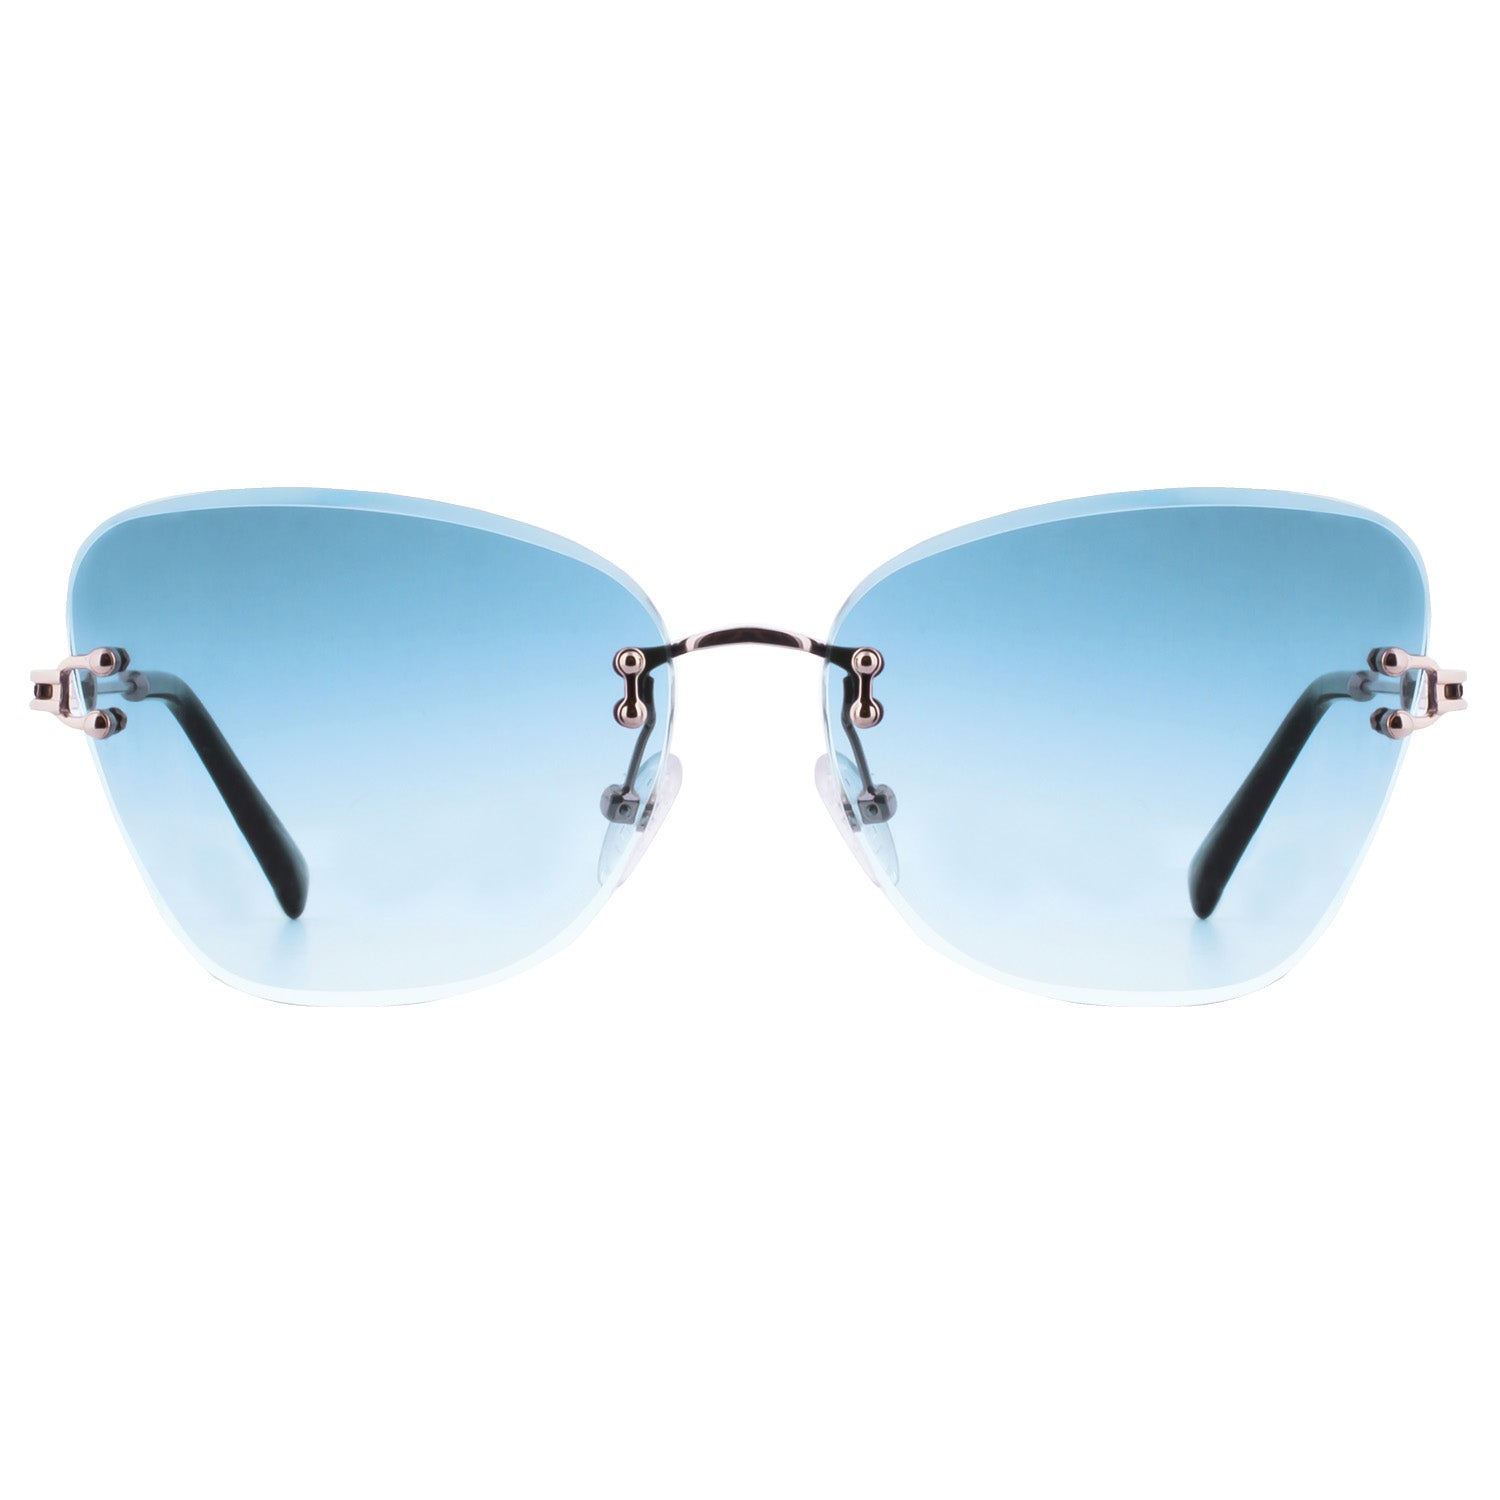 Mokki 90s Butterfly Sunglasses in blue